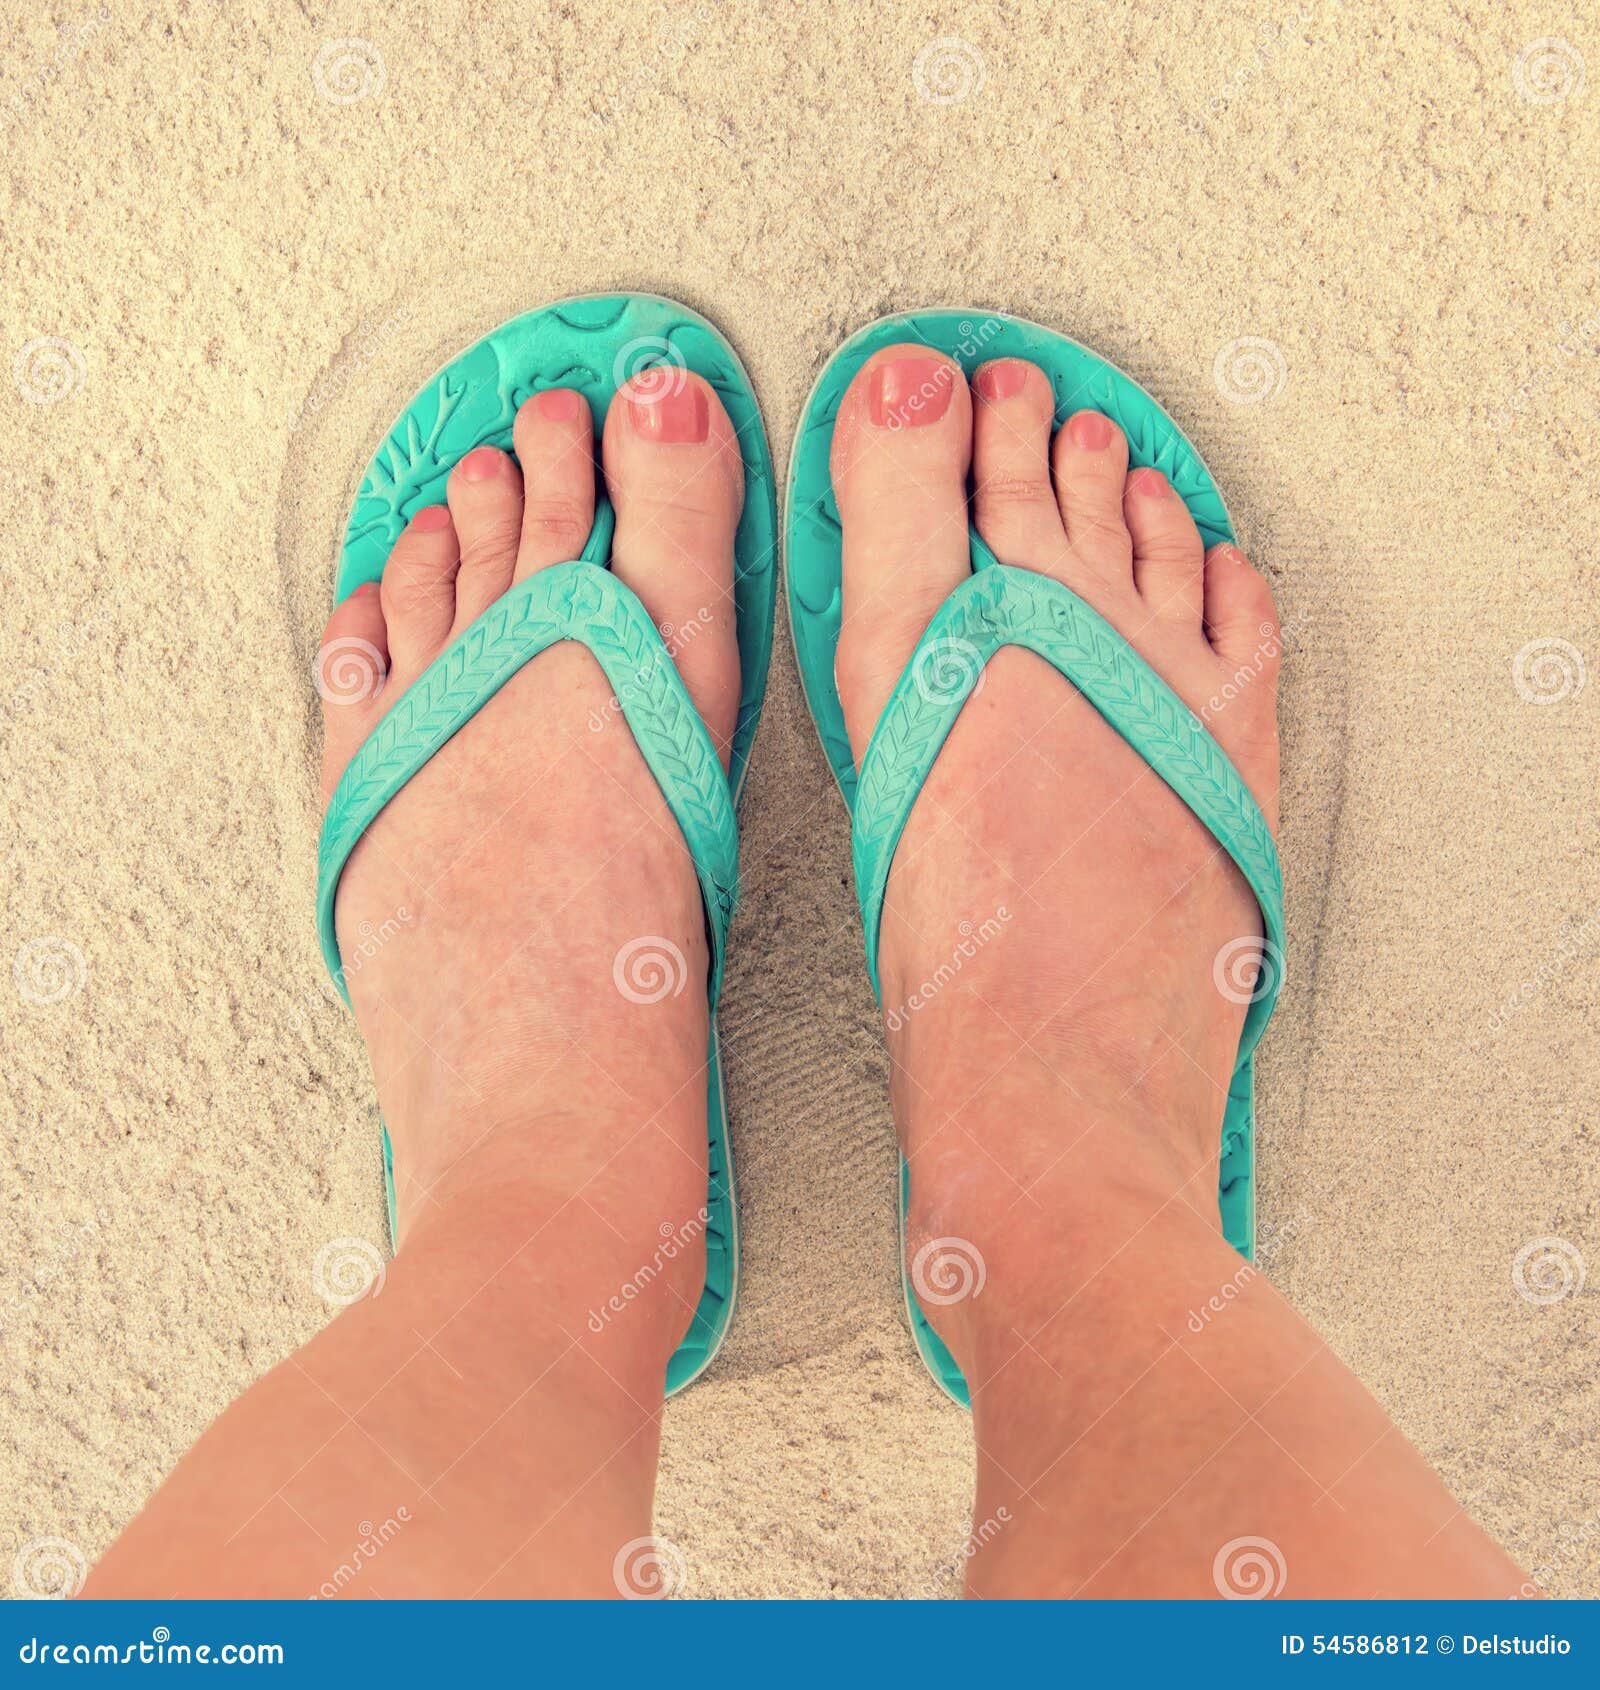 Selfie of Woman Feet Wearing Flip Flops on a Beach Stock Photo - Image ...